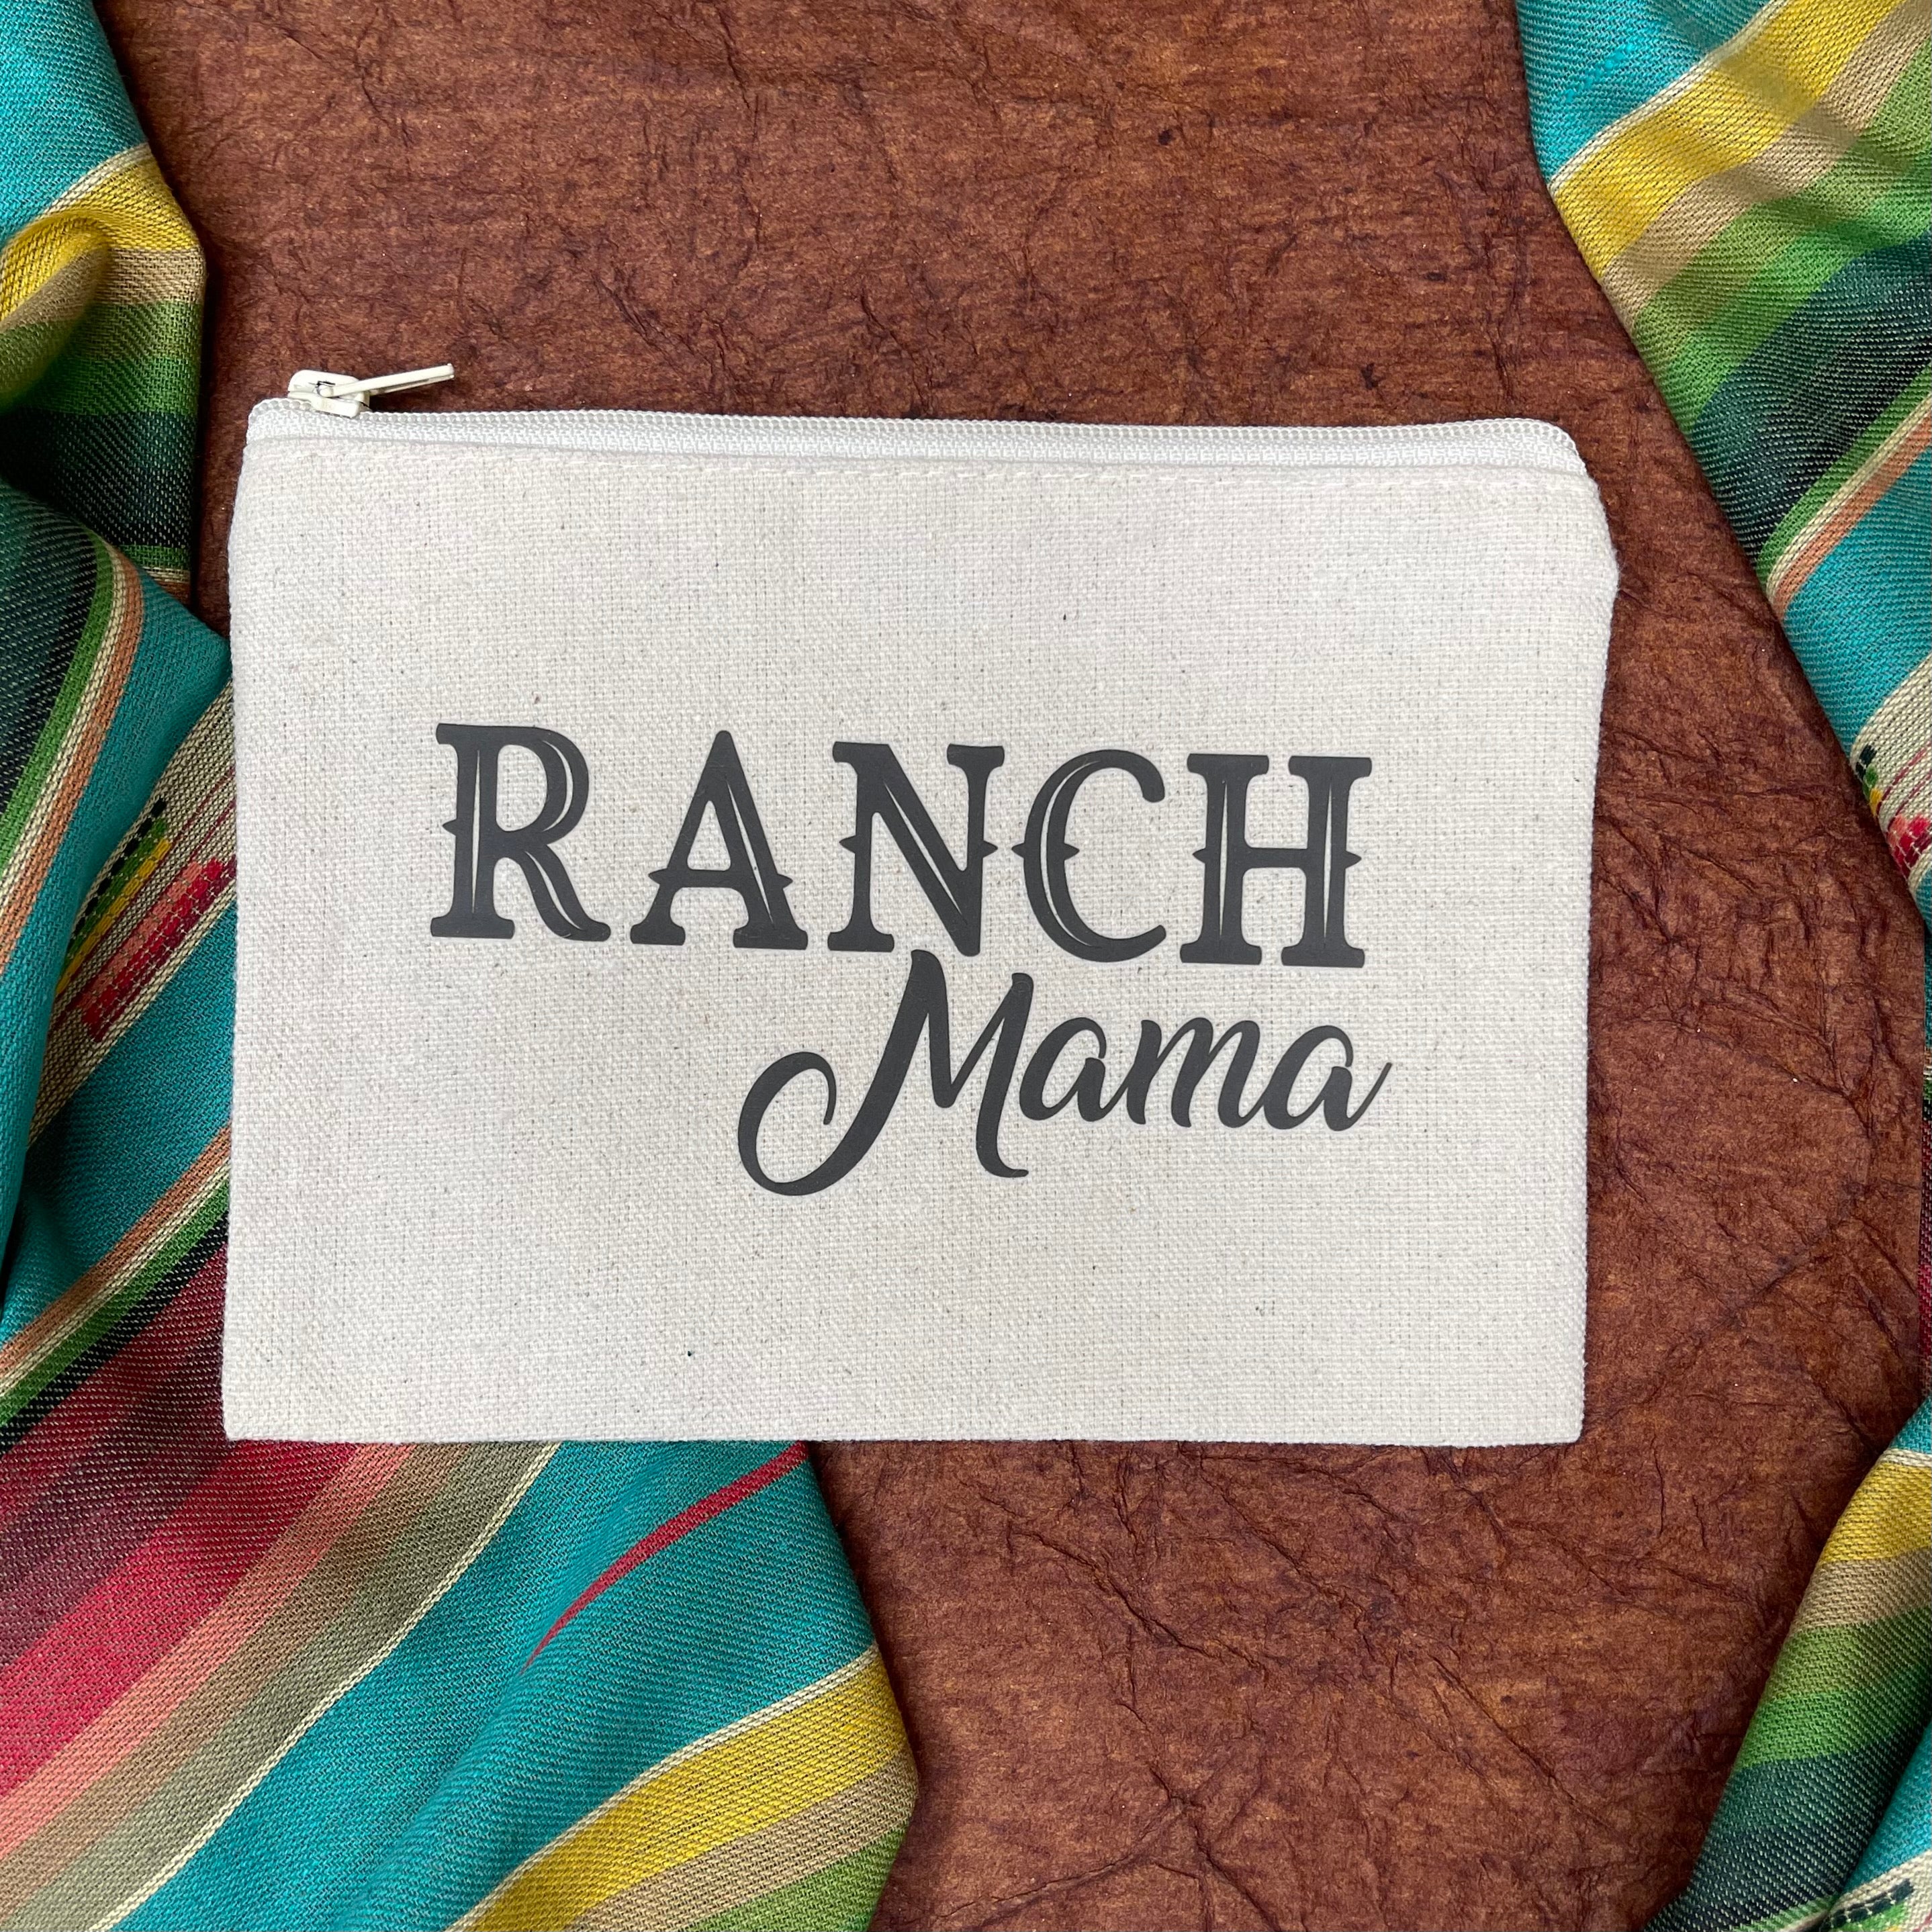 The “Ranch Mama” Ramblin Pouch